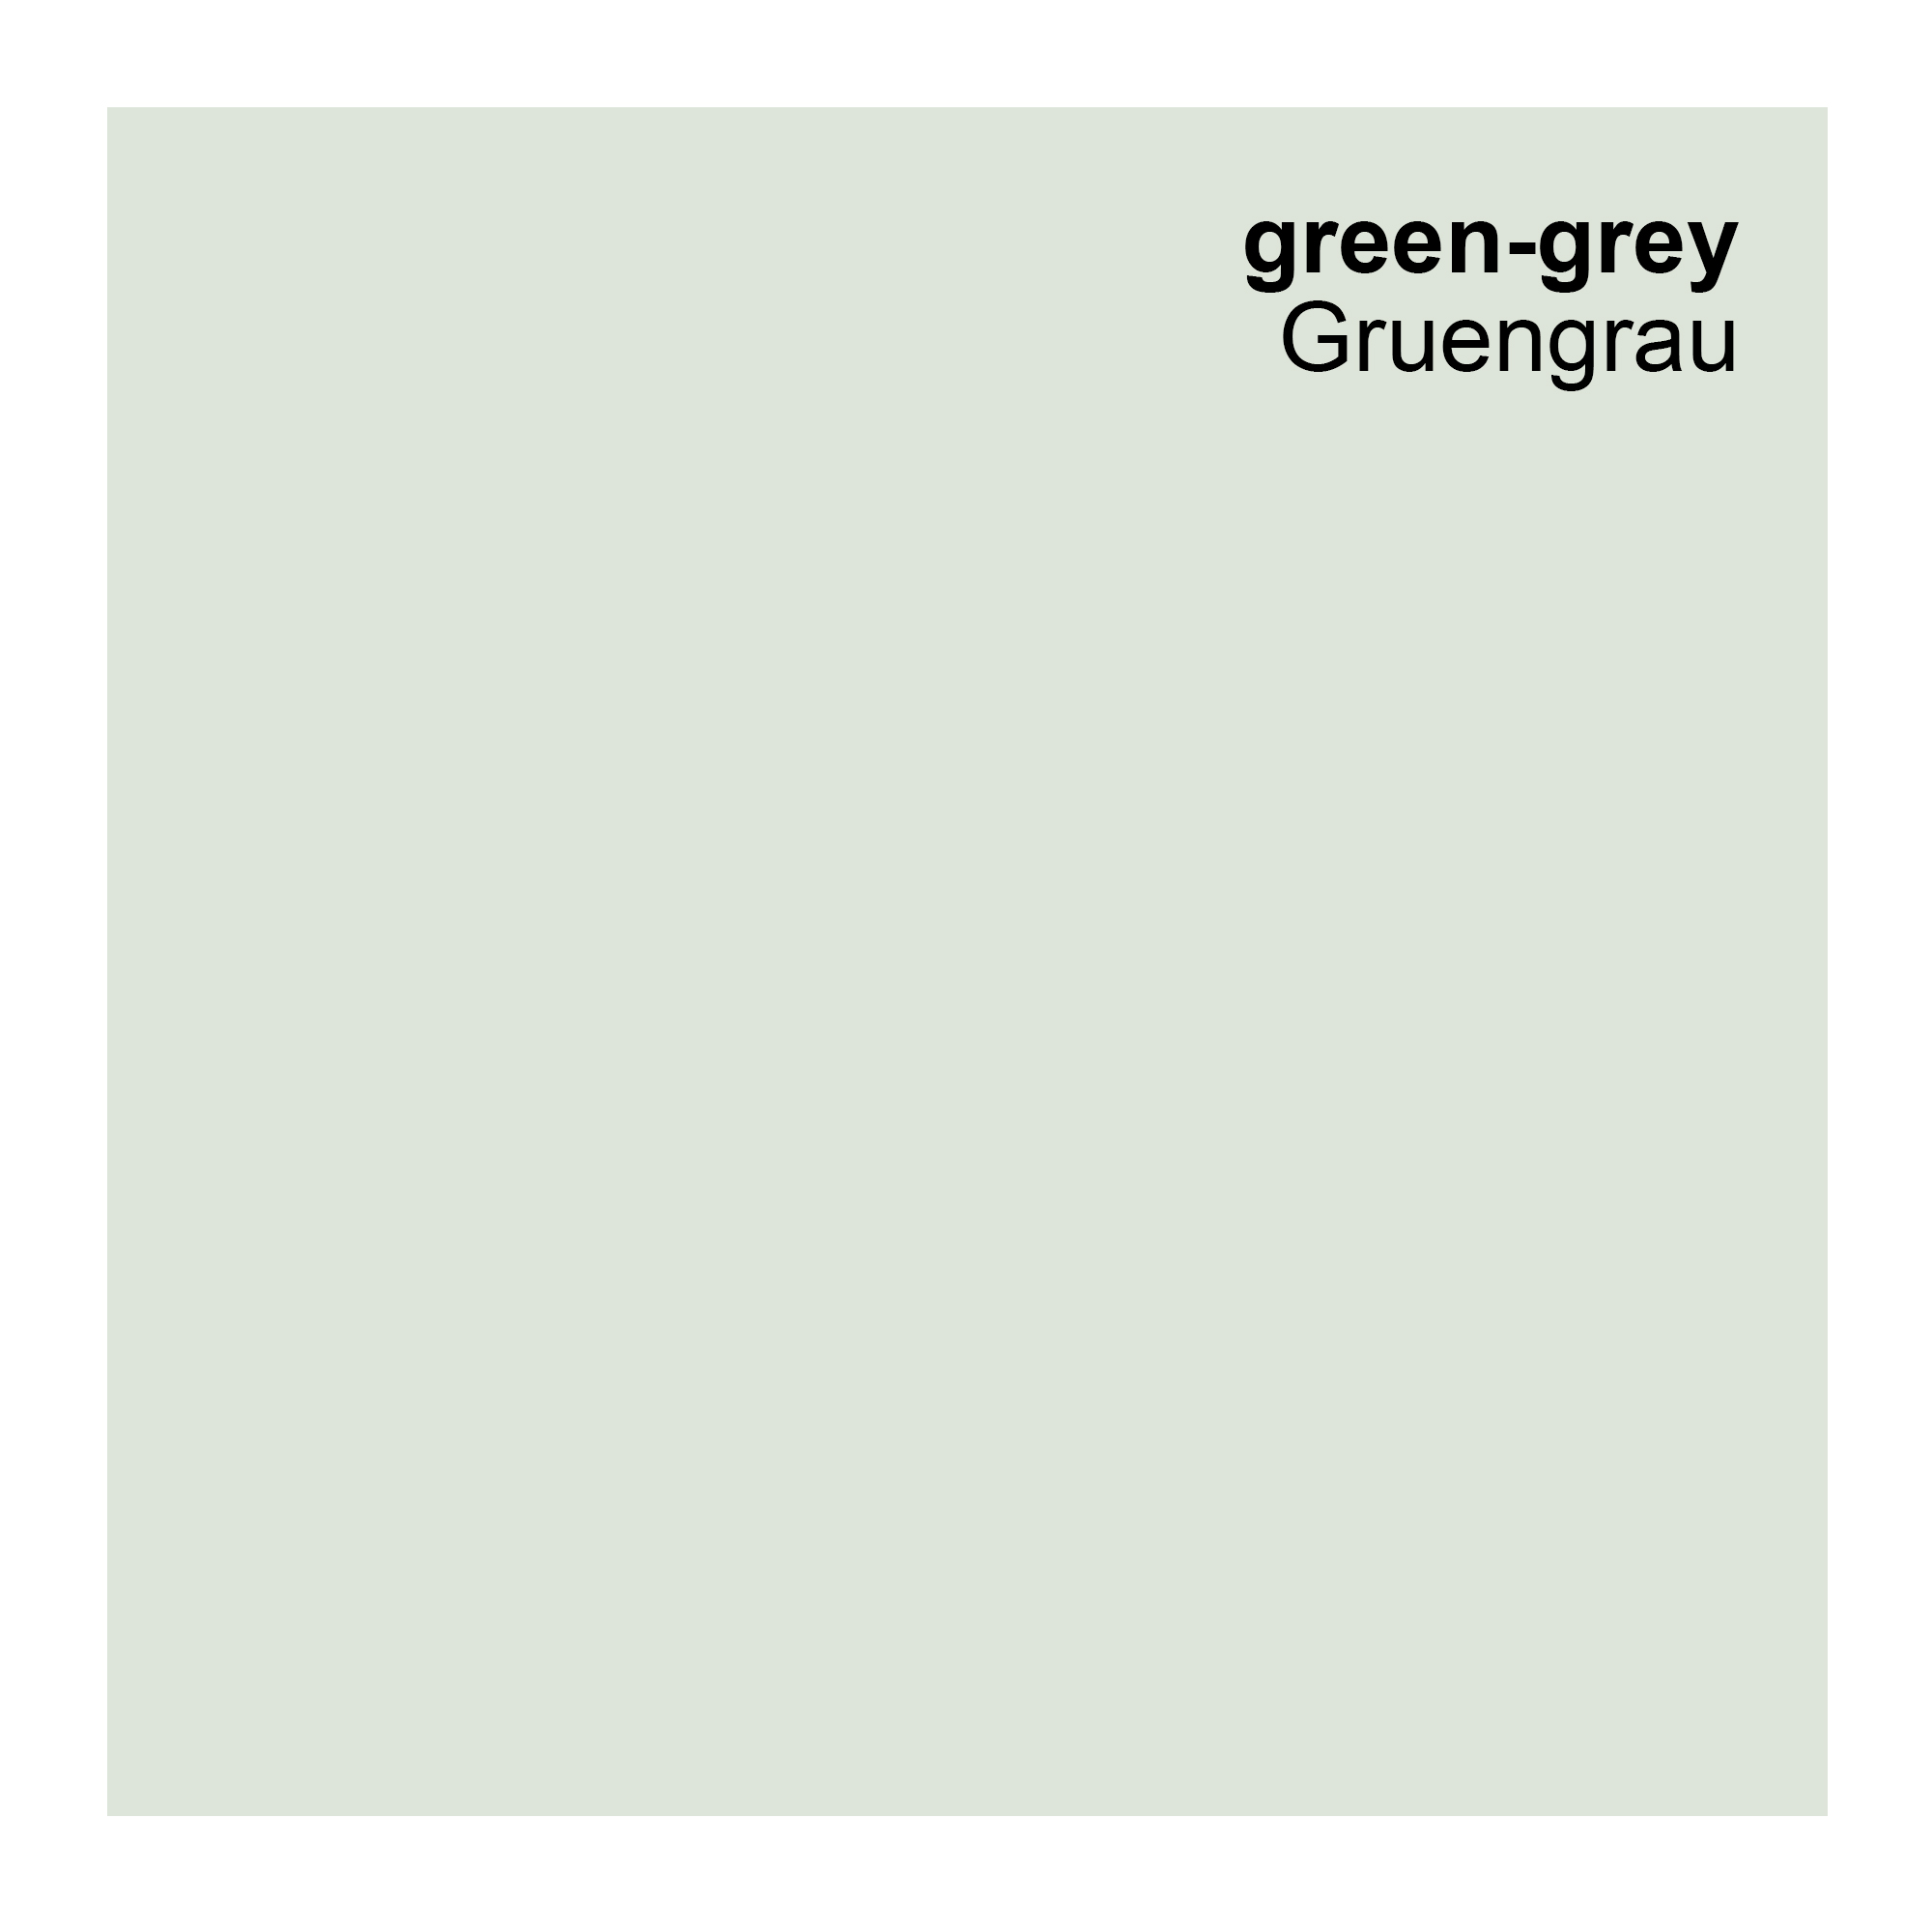 preismaxx Mattlatex urban colors, bunte Wandfarbe, grau, grüngrau, green-grey 5L